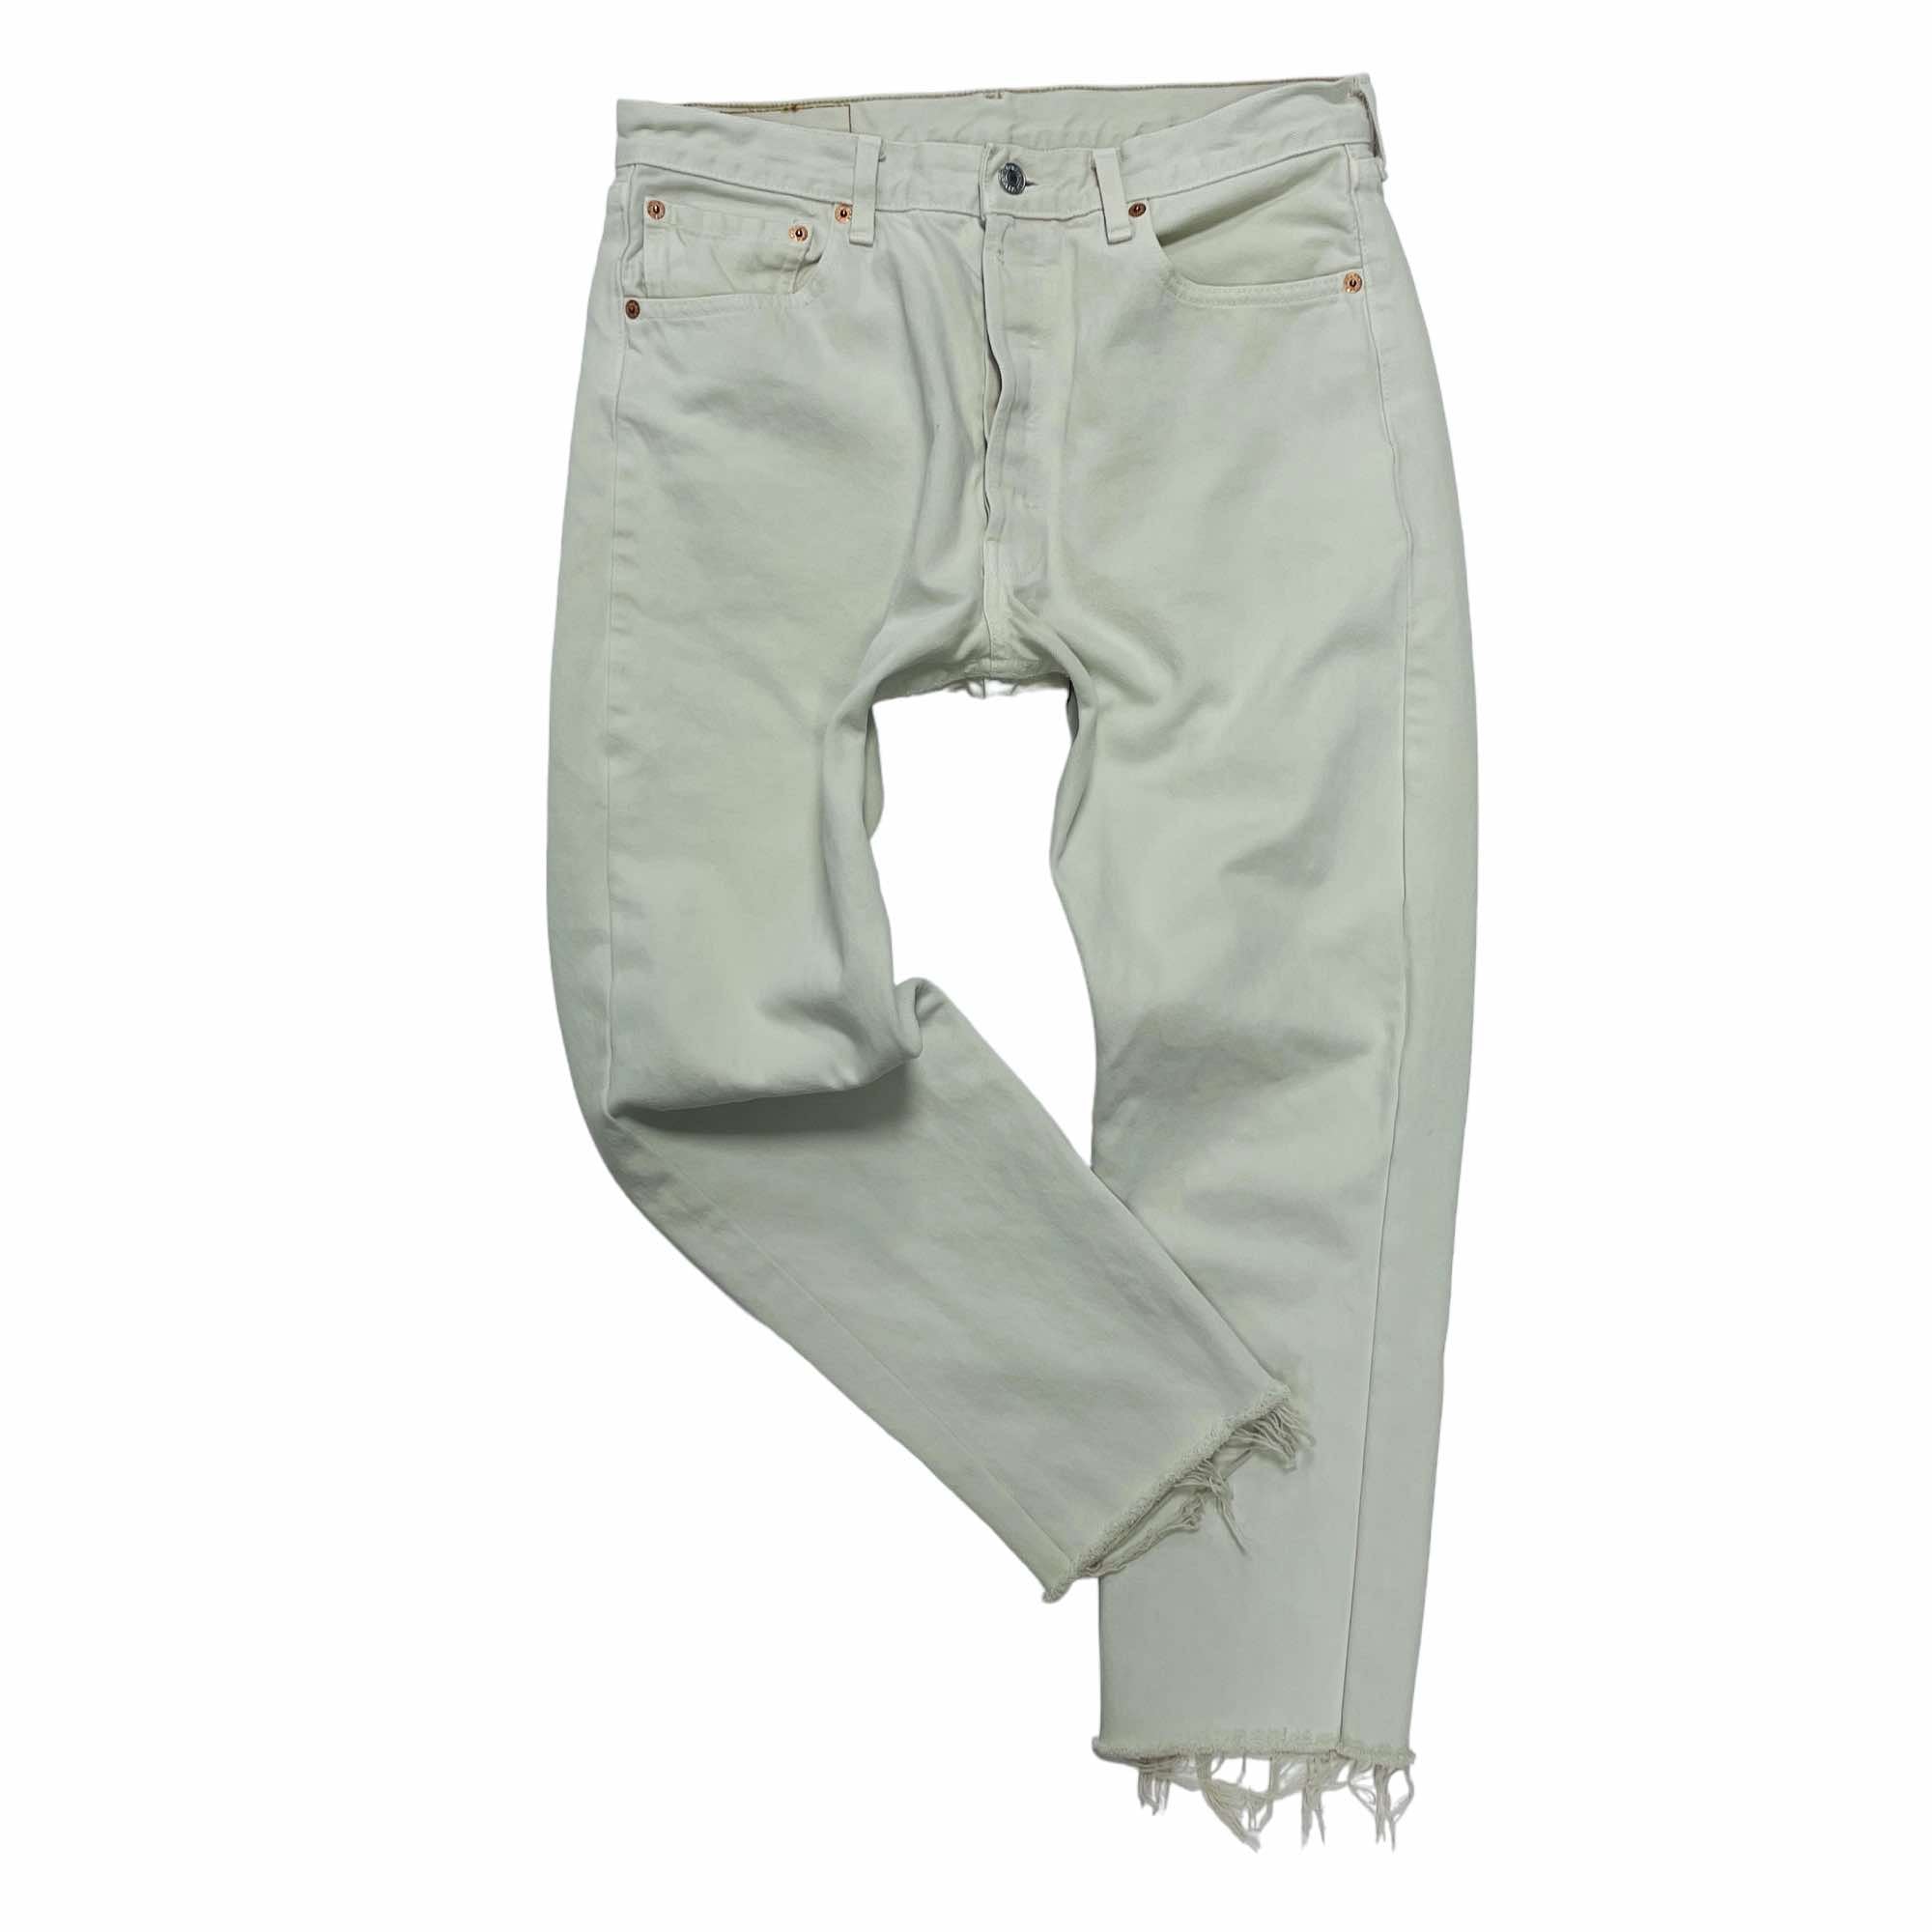 Levi's 501 Cut Denim Jeans - W34 L26